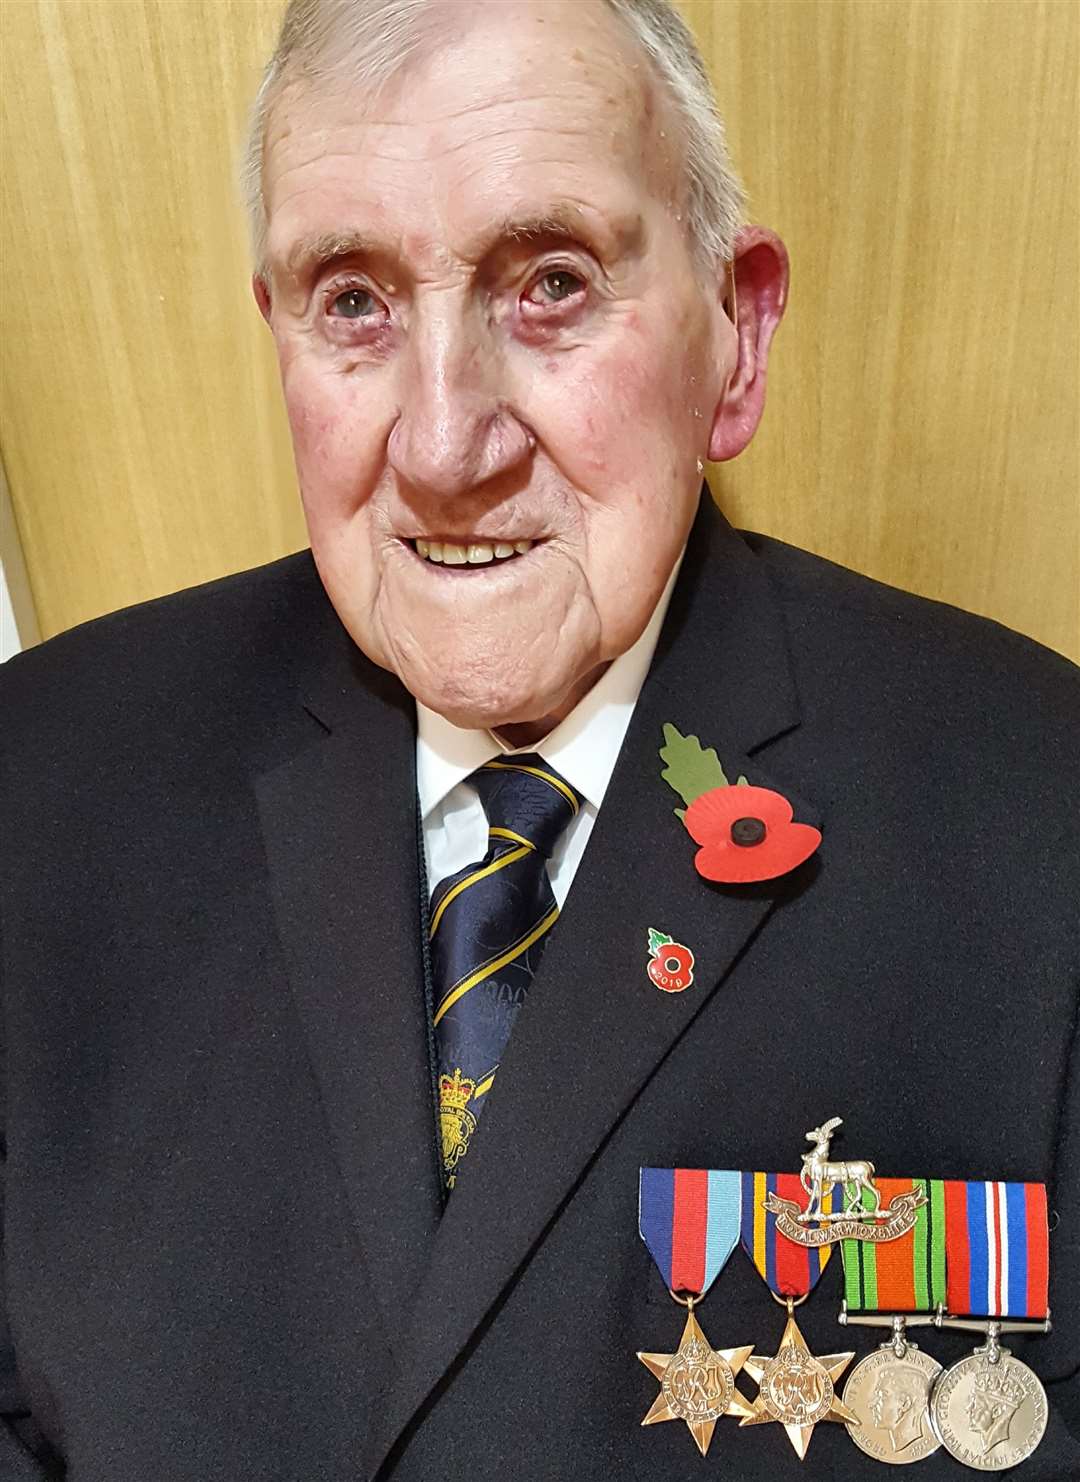 Lesie Burkett, now 99, wearing his war medals